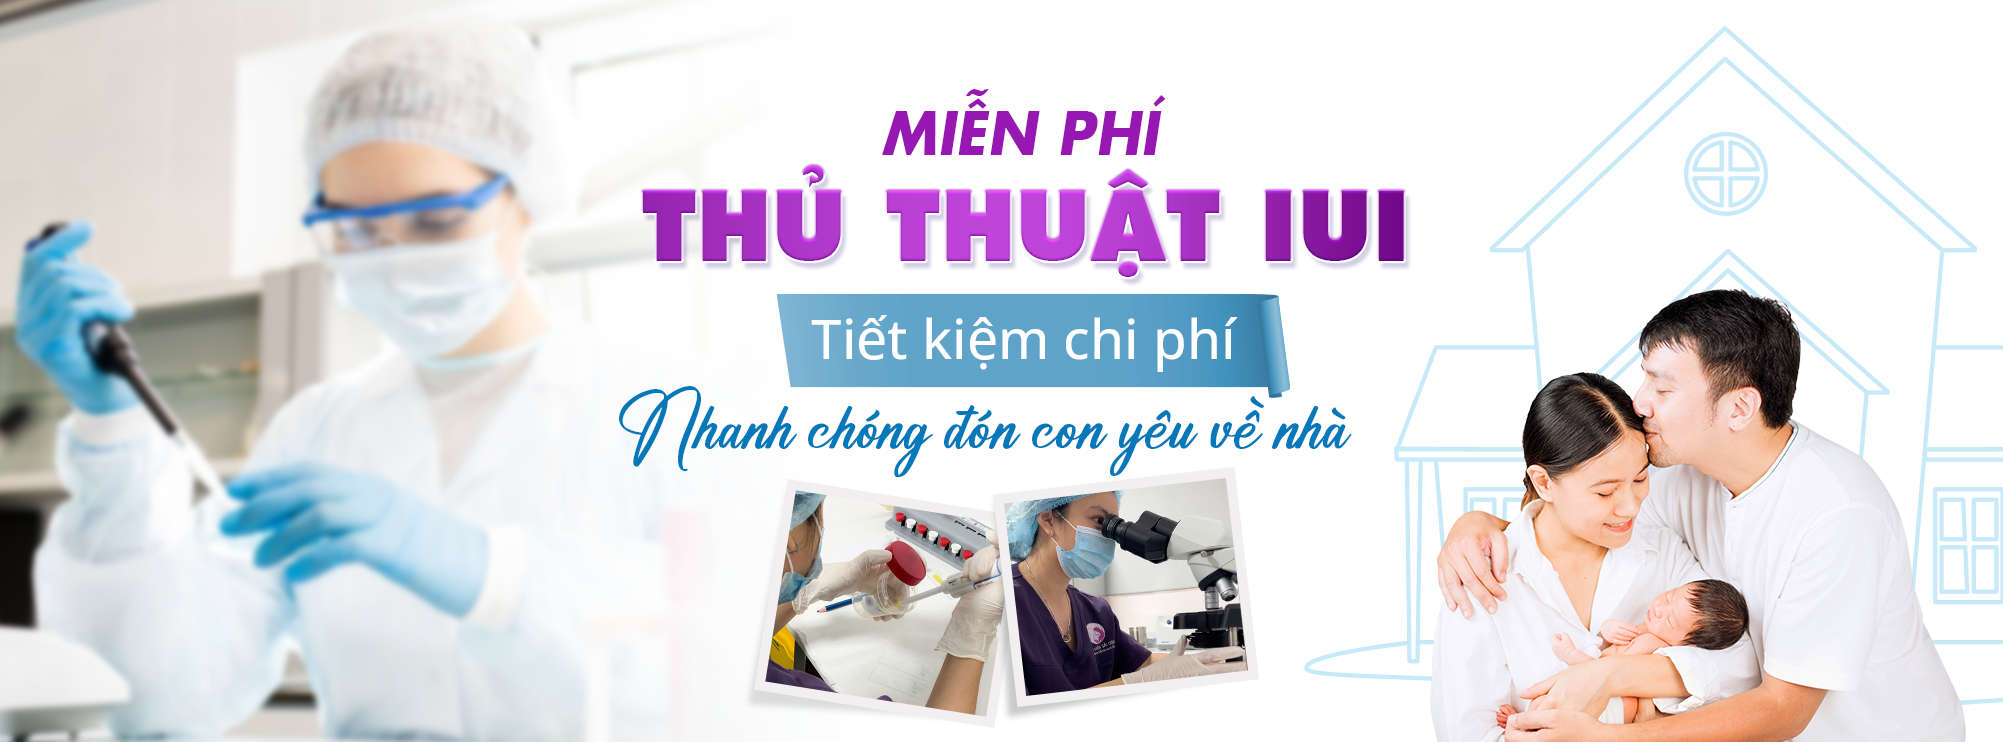 Banner Trang Chủ - Miễn Phí Thủ Thuật IUI